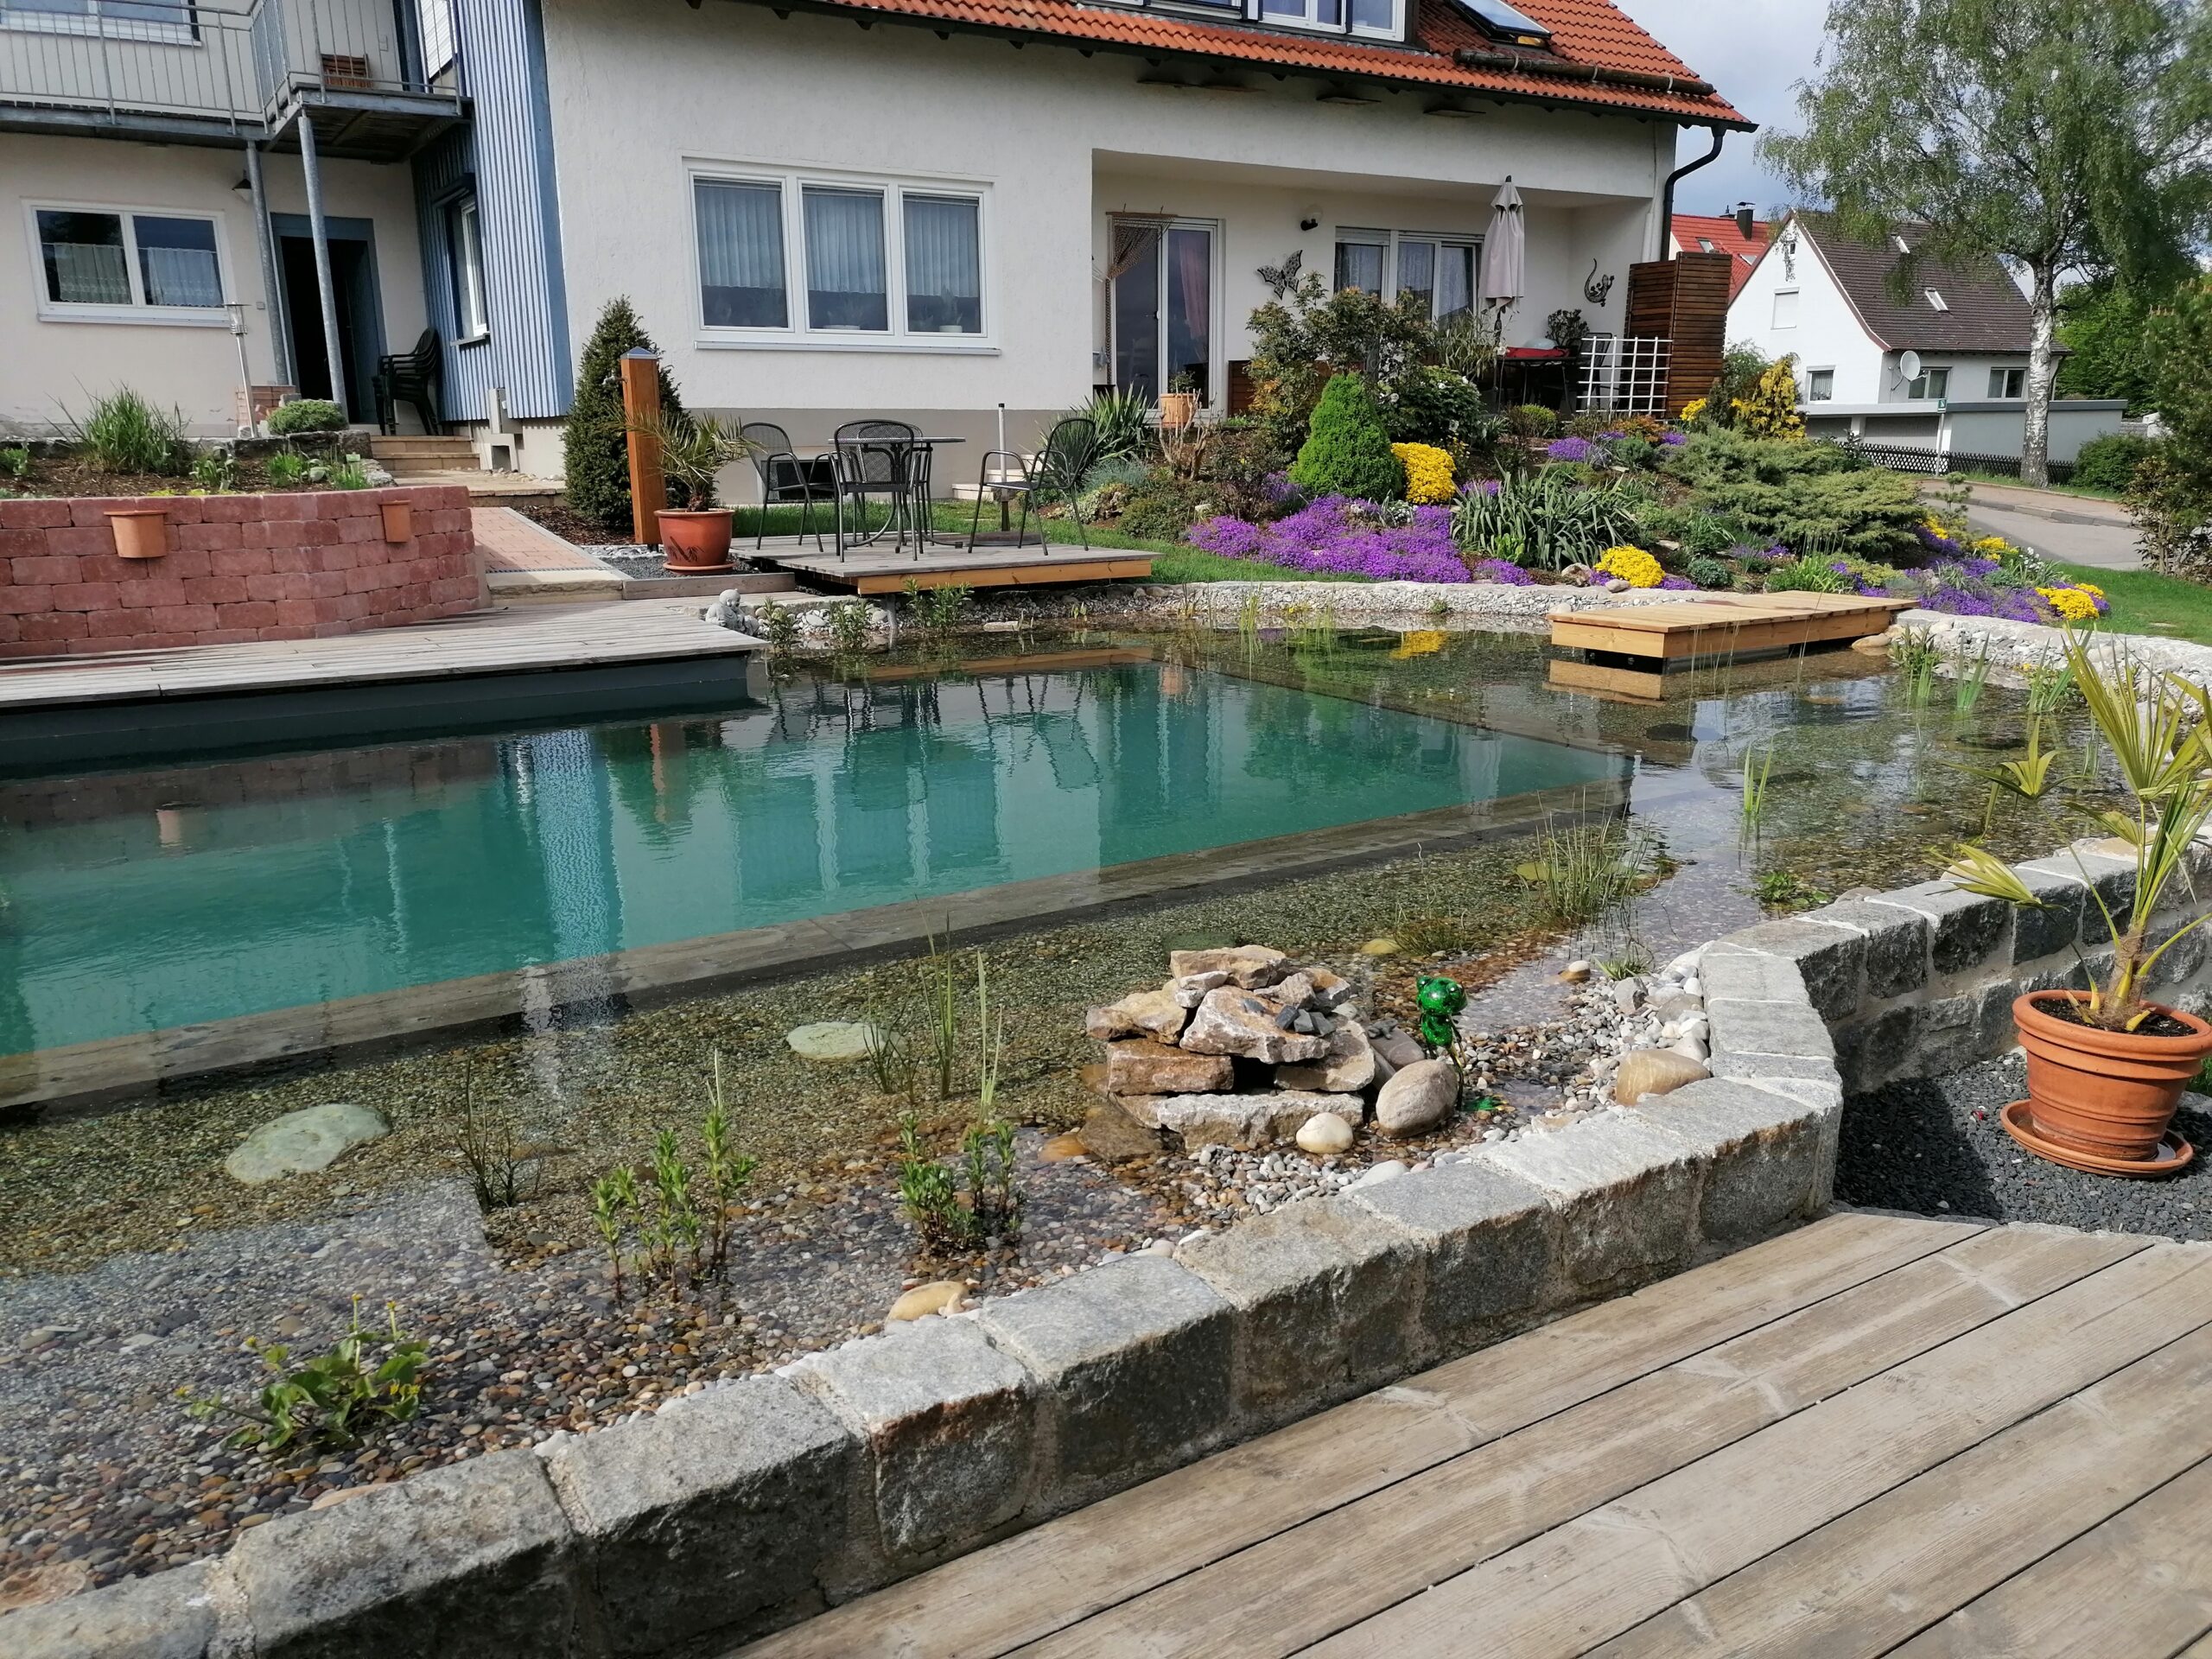 Entdecken Sie ein beeindruckendes Schwimmteich Selbstbauprojekt mit Teichfolie vom Profi nahe Heidenheim. Inspirierend und machbar!